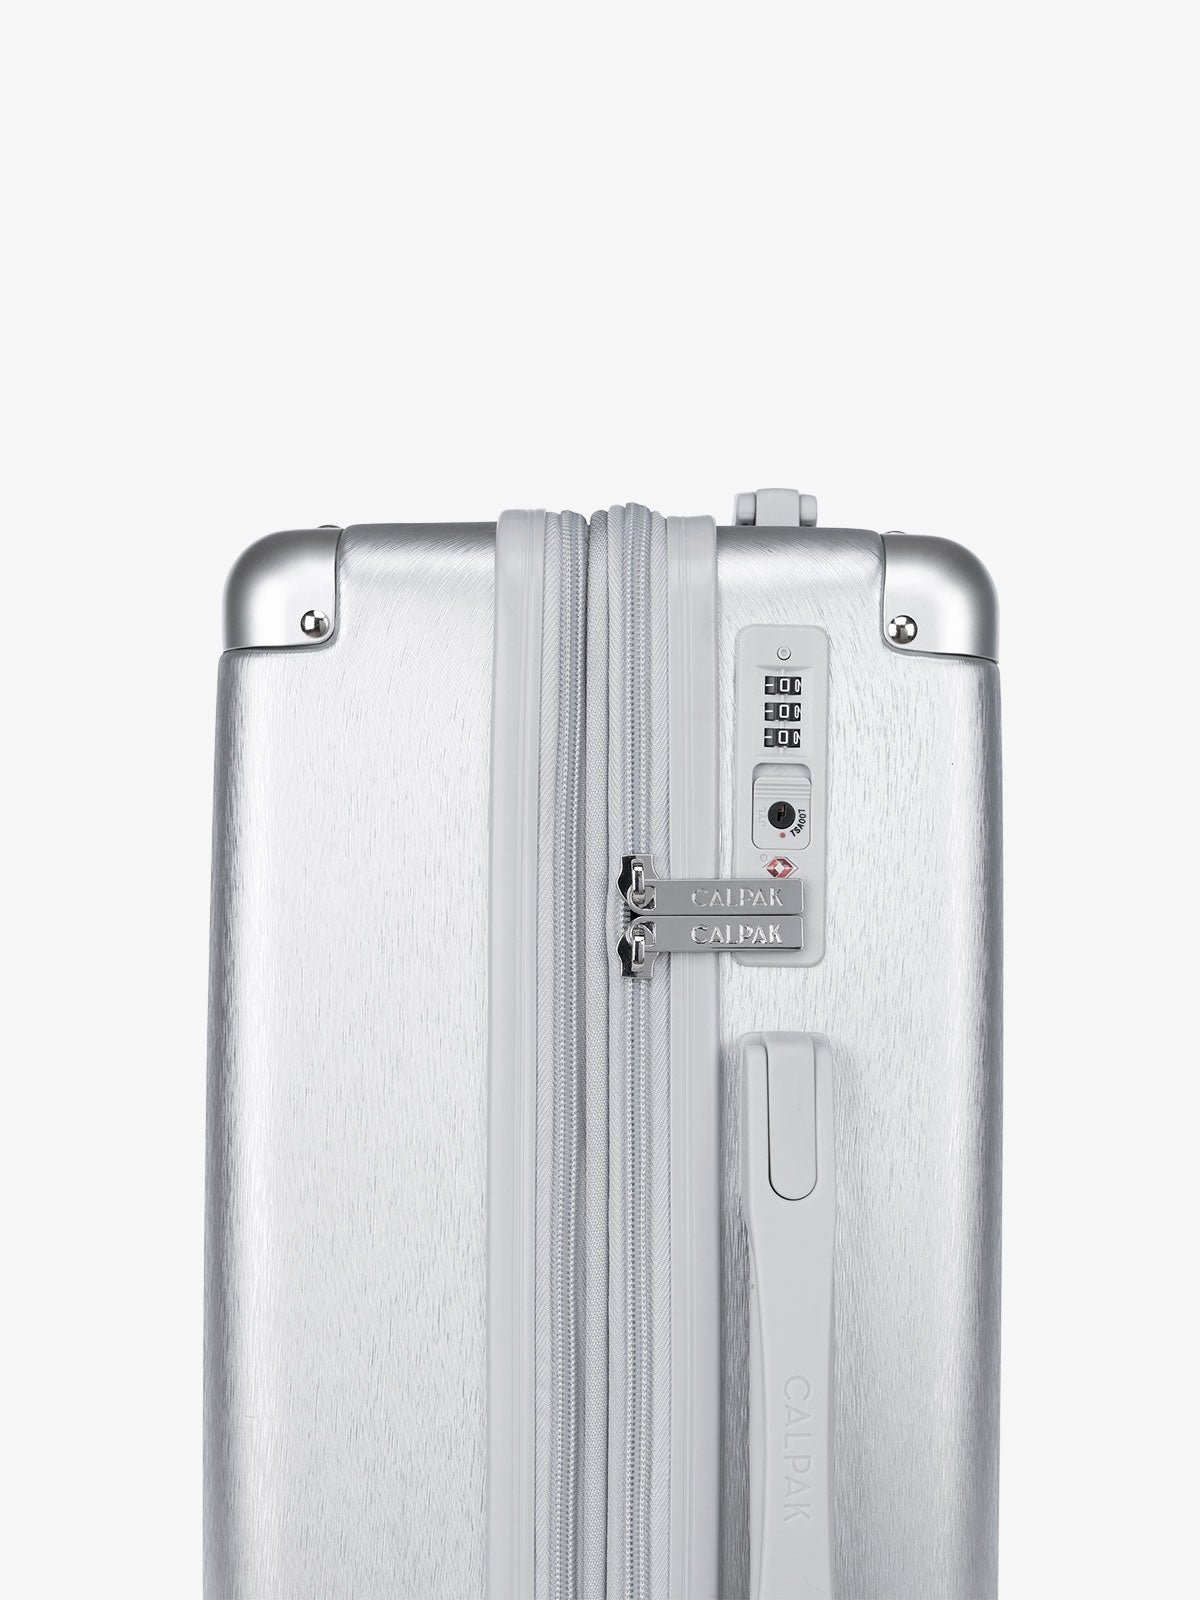 silver hard shell 3 piece luggage set with TSA lock